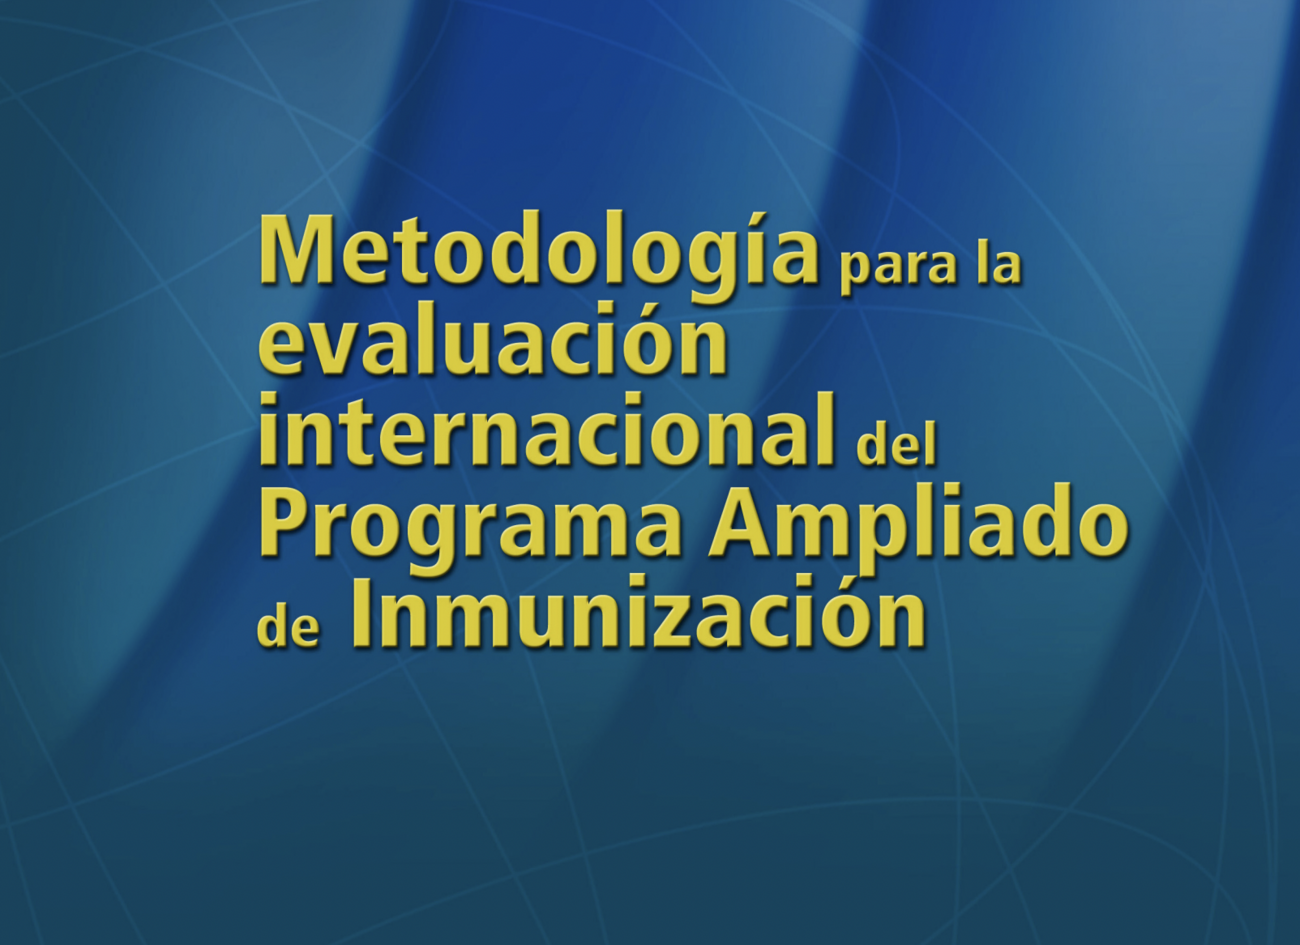 Metodología para la evaluación internacional del Programa Ampliado de Inmunización, 2012